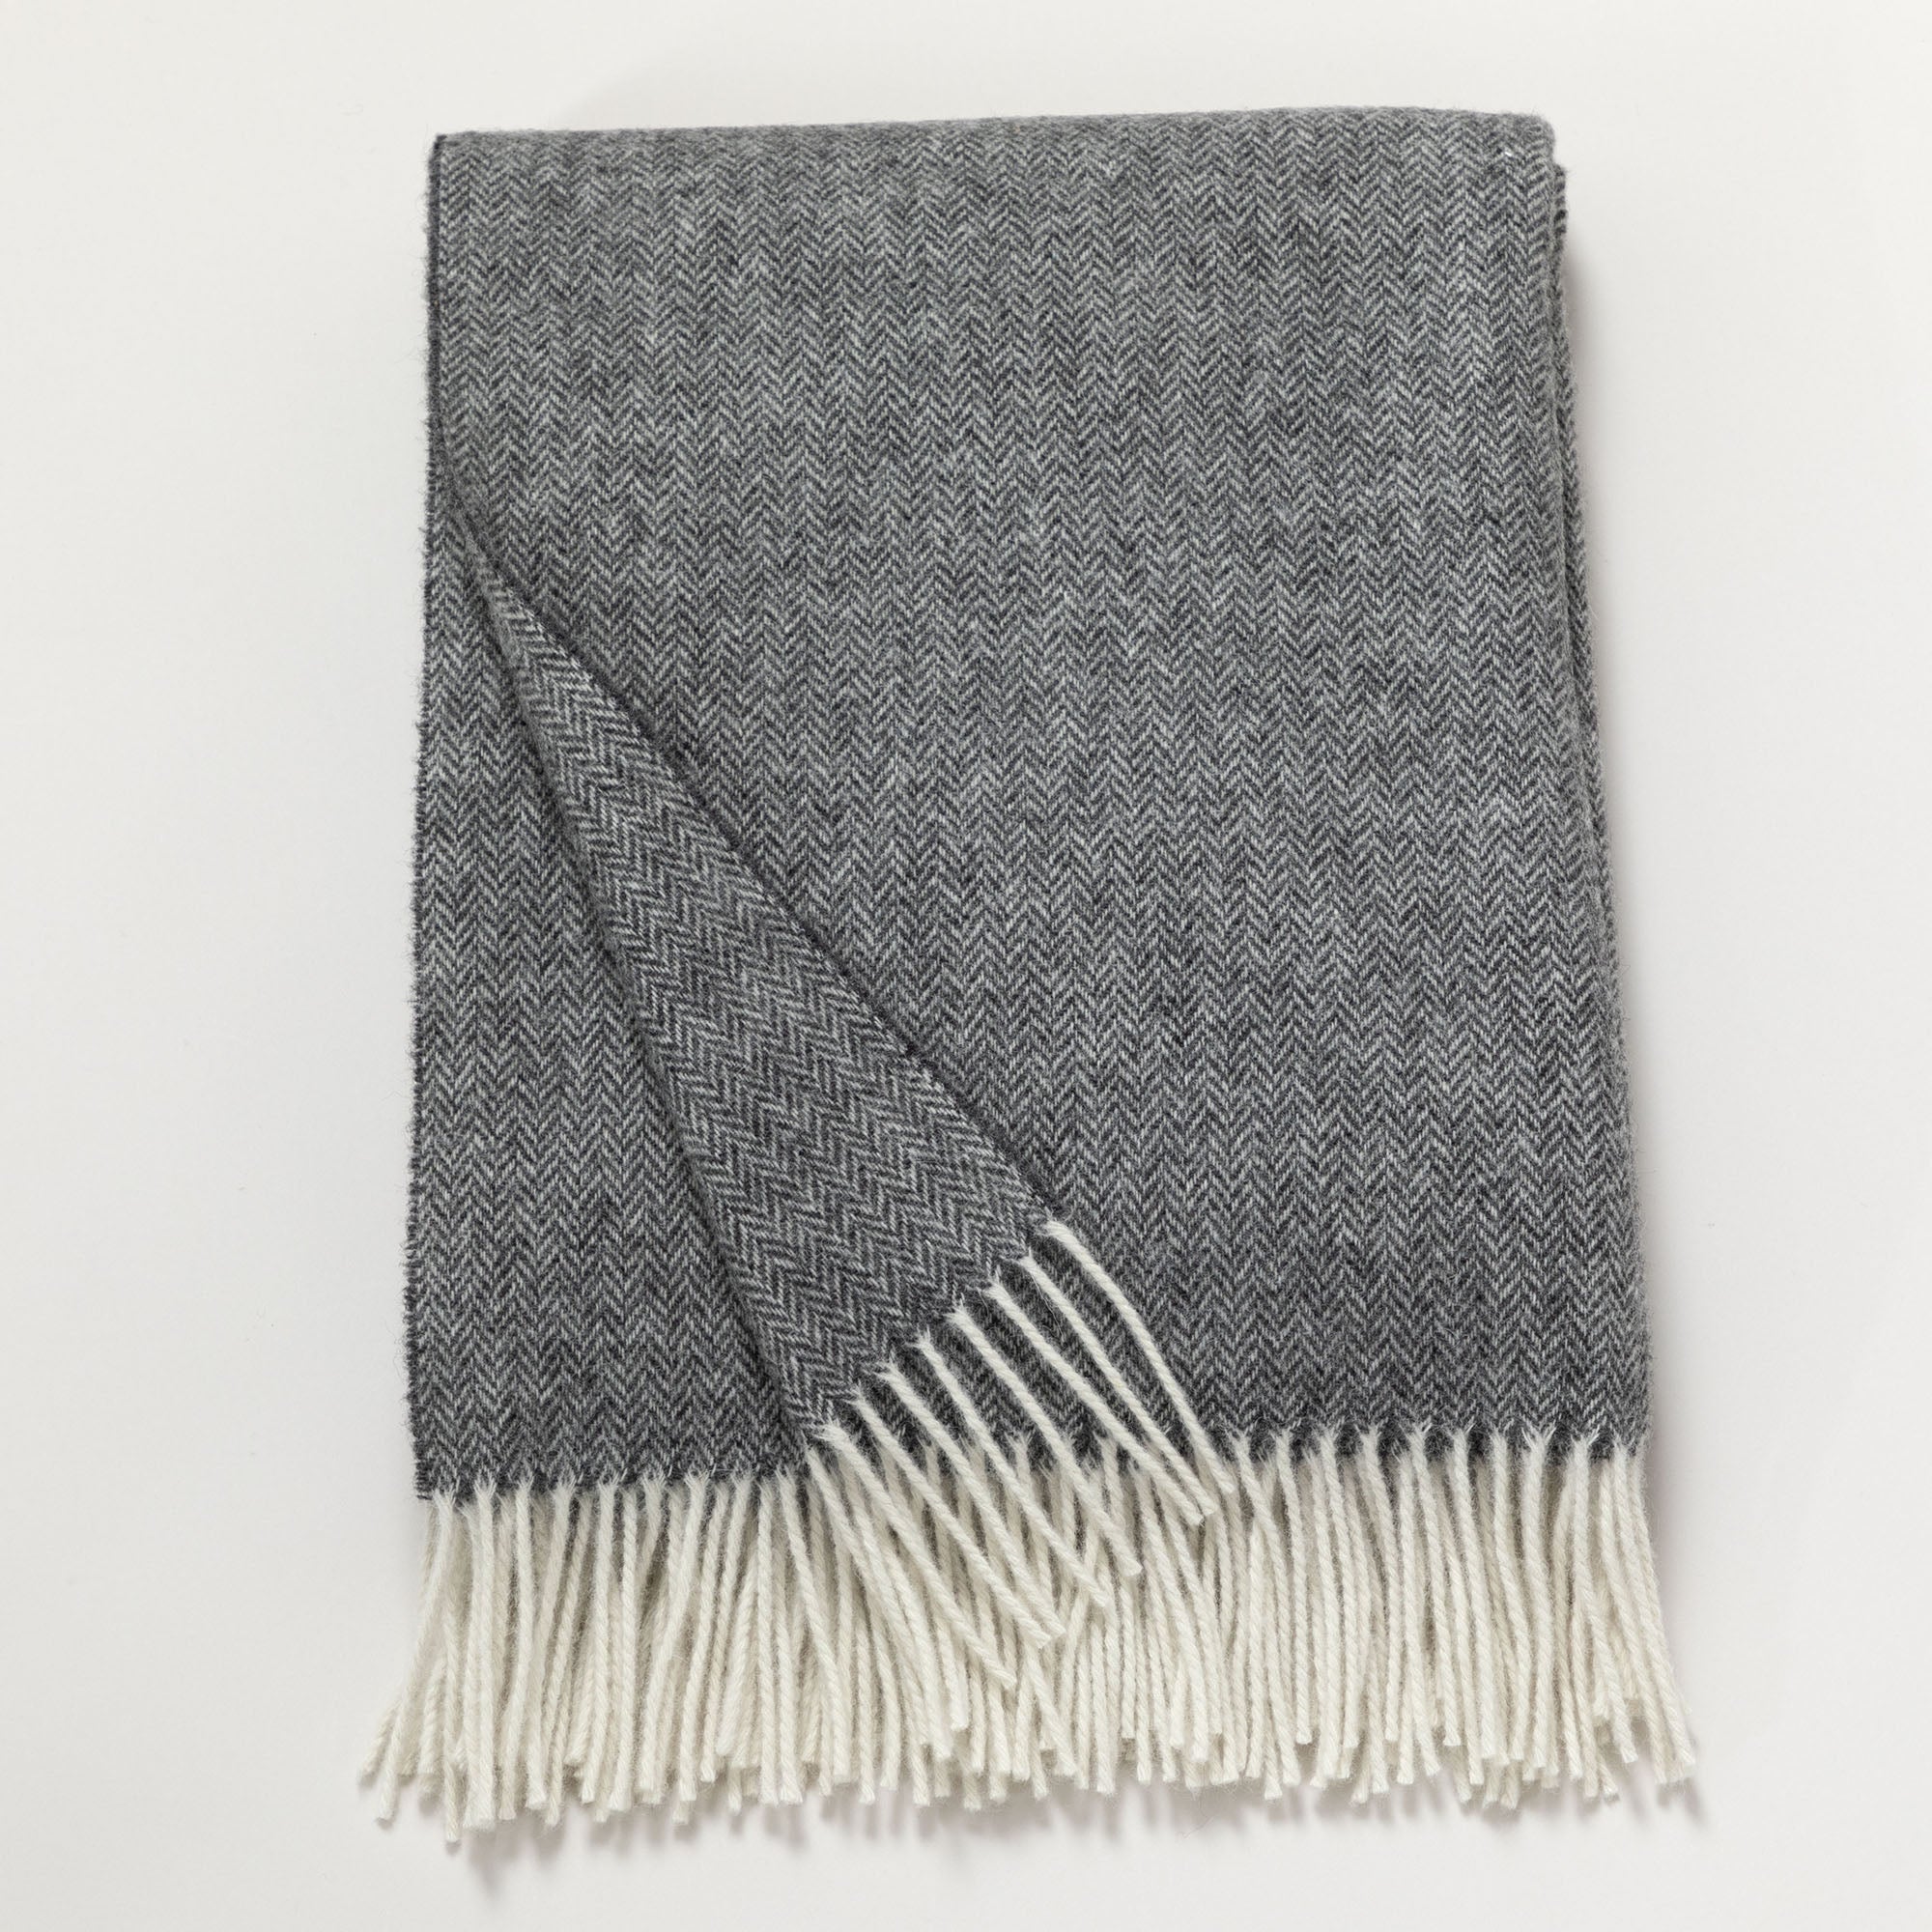 Ukrainian 100% Merino Wool Throw Blanket - Pewter